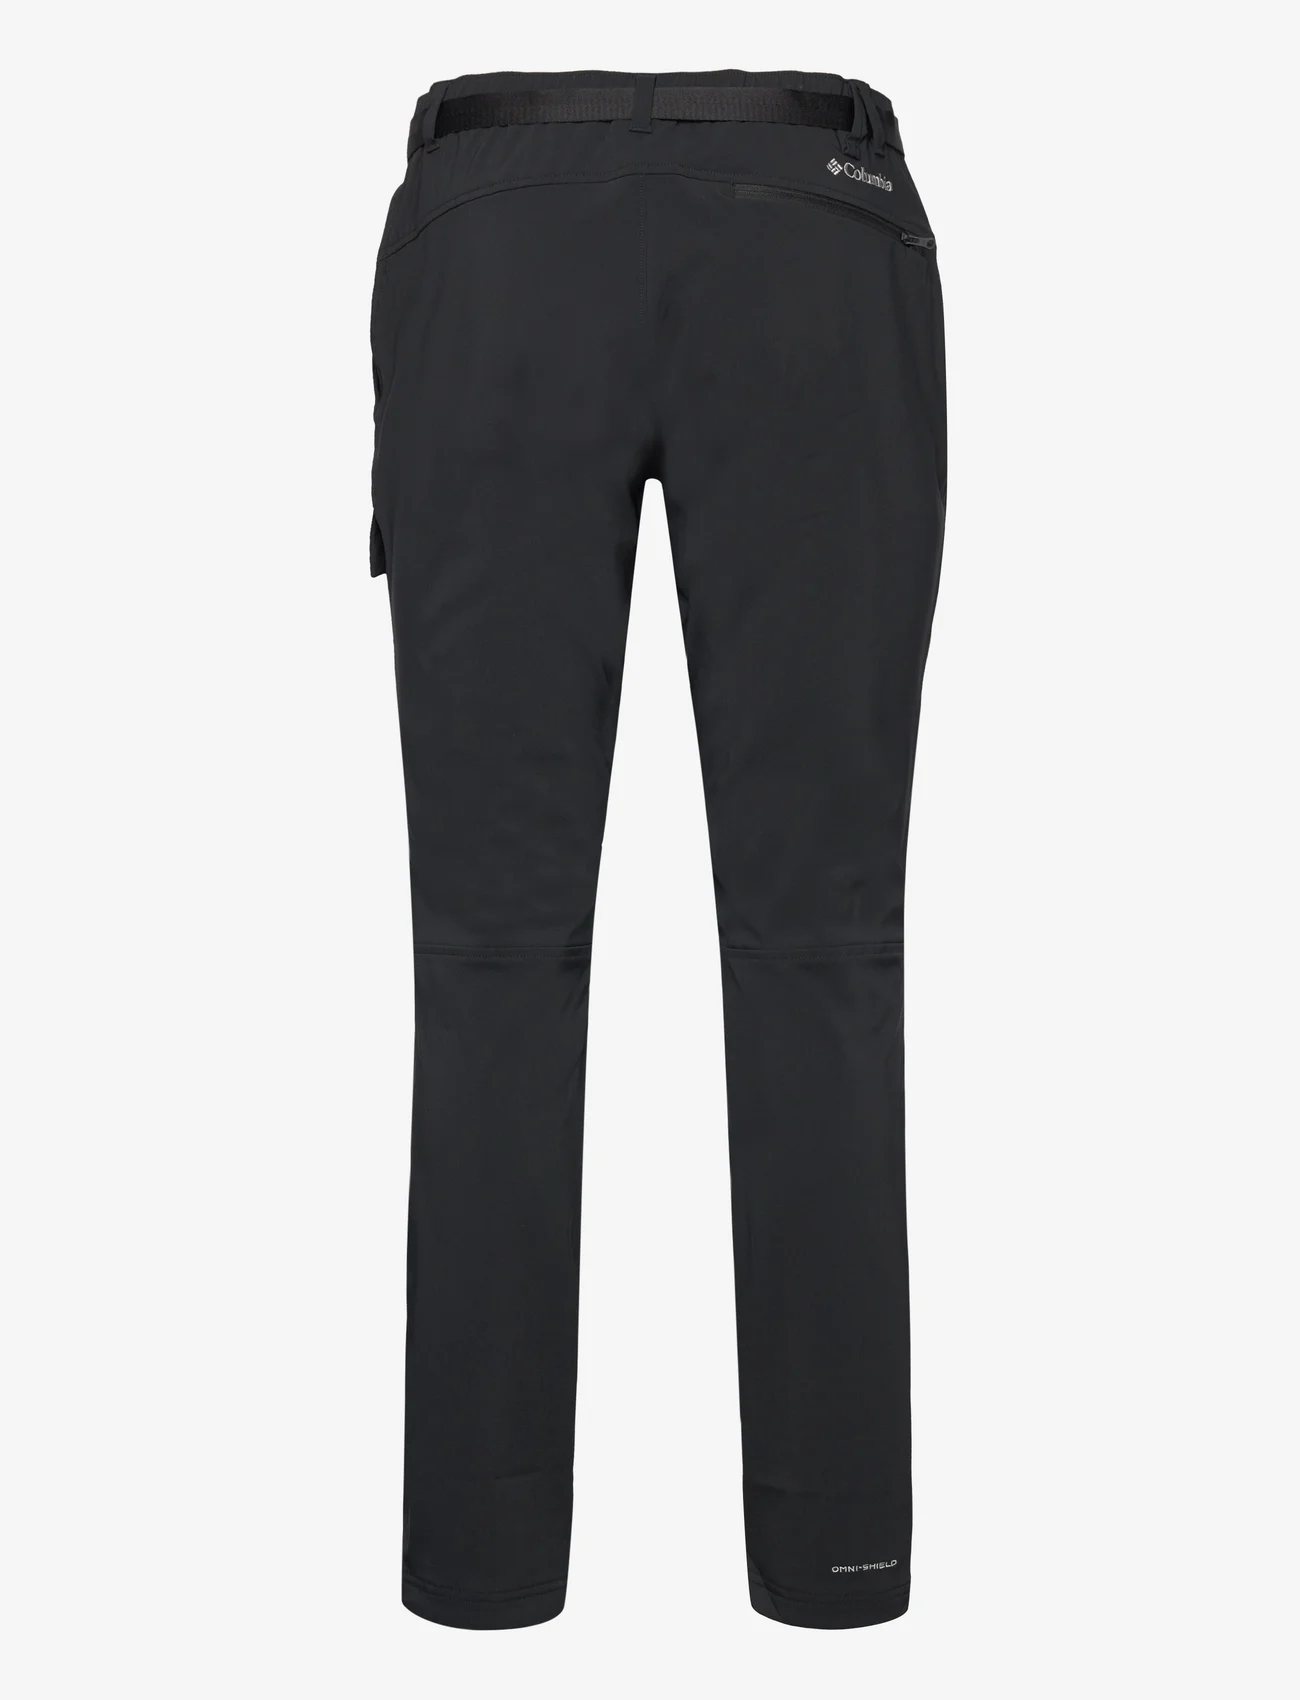 Columbia Sportswear - Maxtrail Midweight Warm Pant - lauko kelnės - black - 1